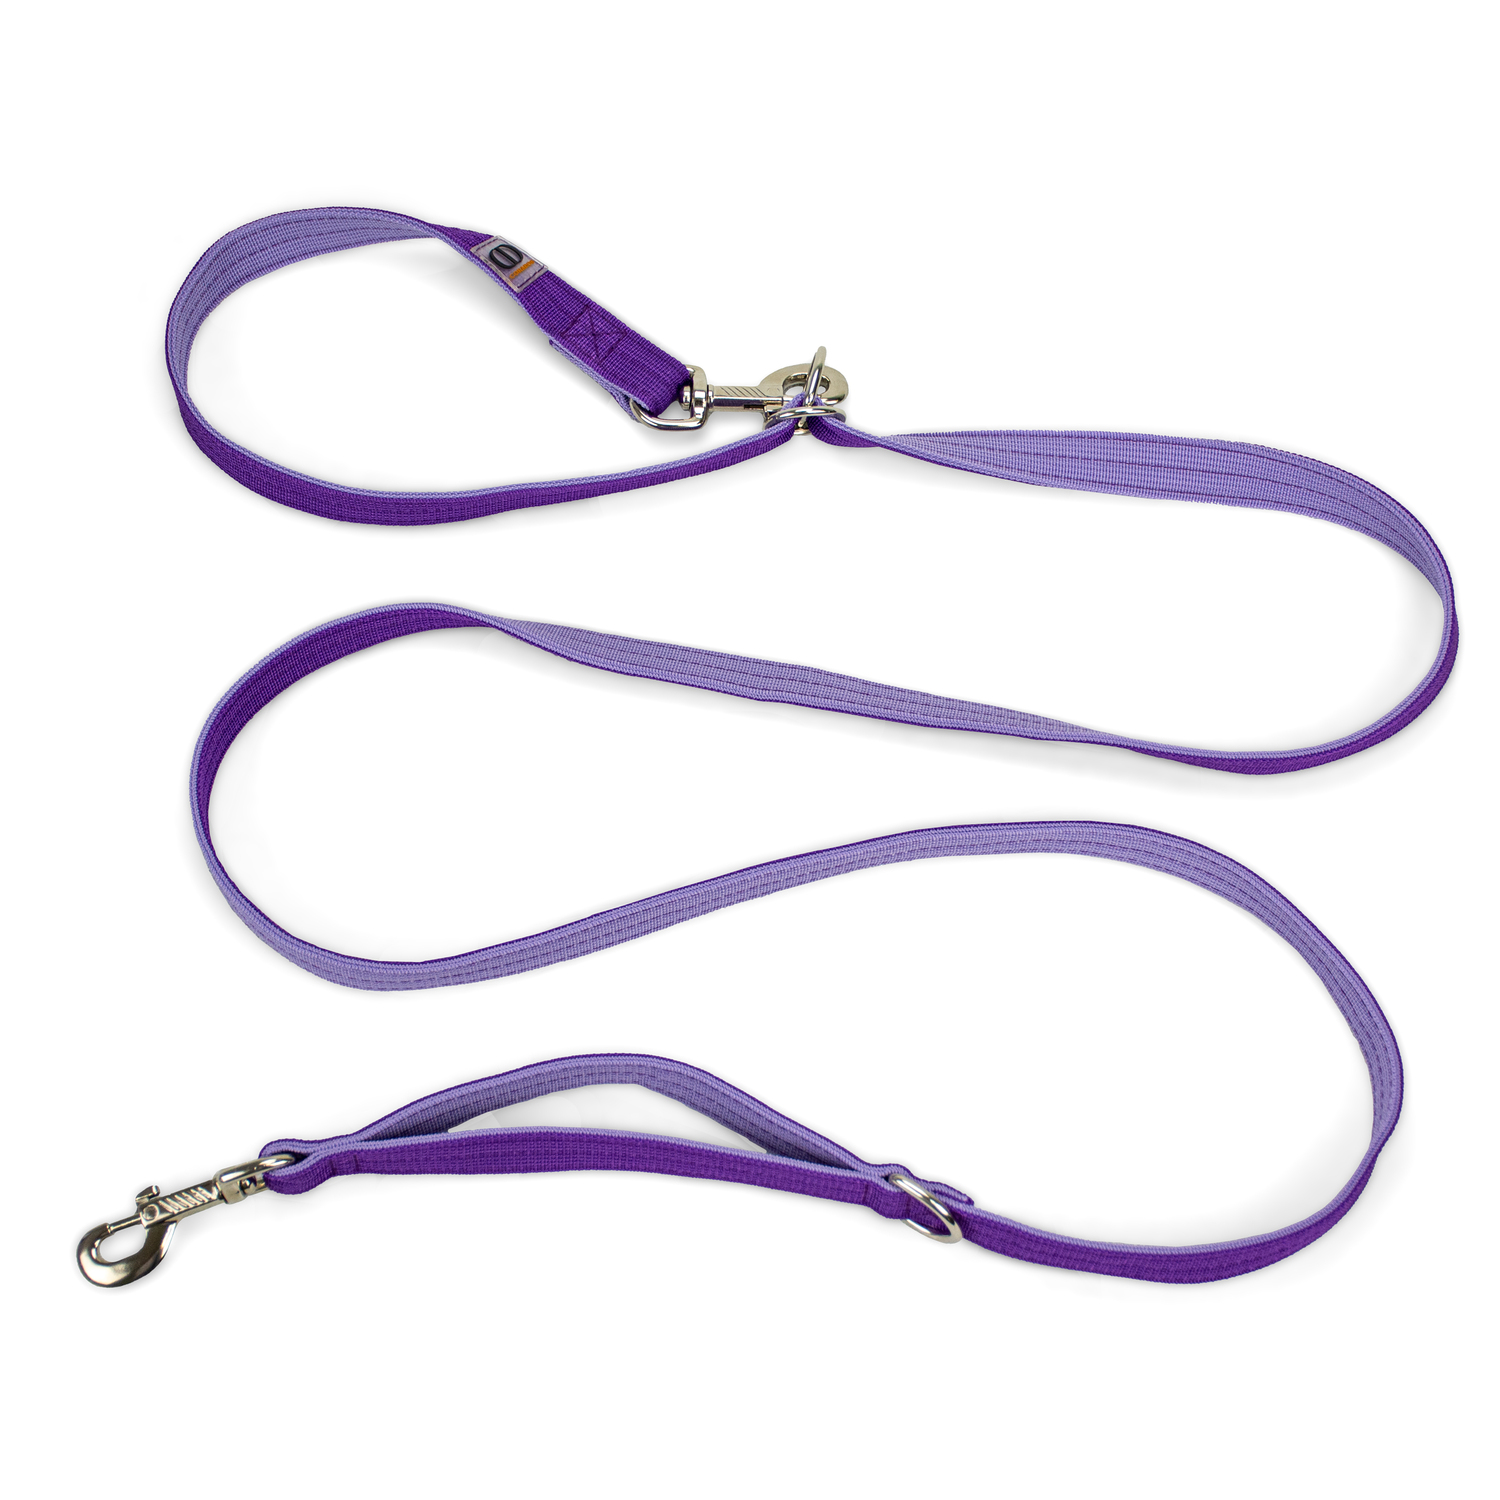 Поводок-перестежка с ручкой контролем и подвижным кольцом, CORADOG To and fro, 2,5м,  цвет фиолетовый, лавандовый